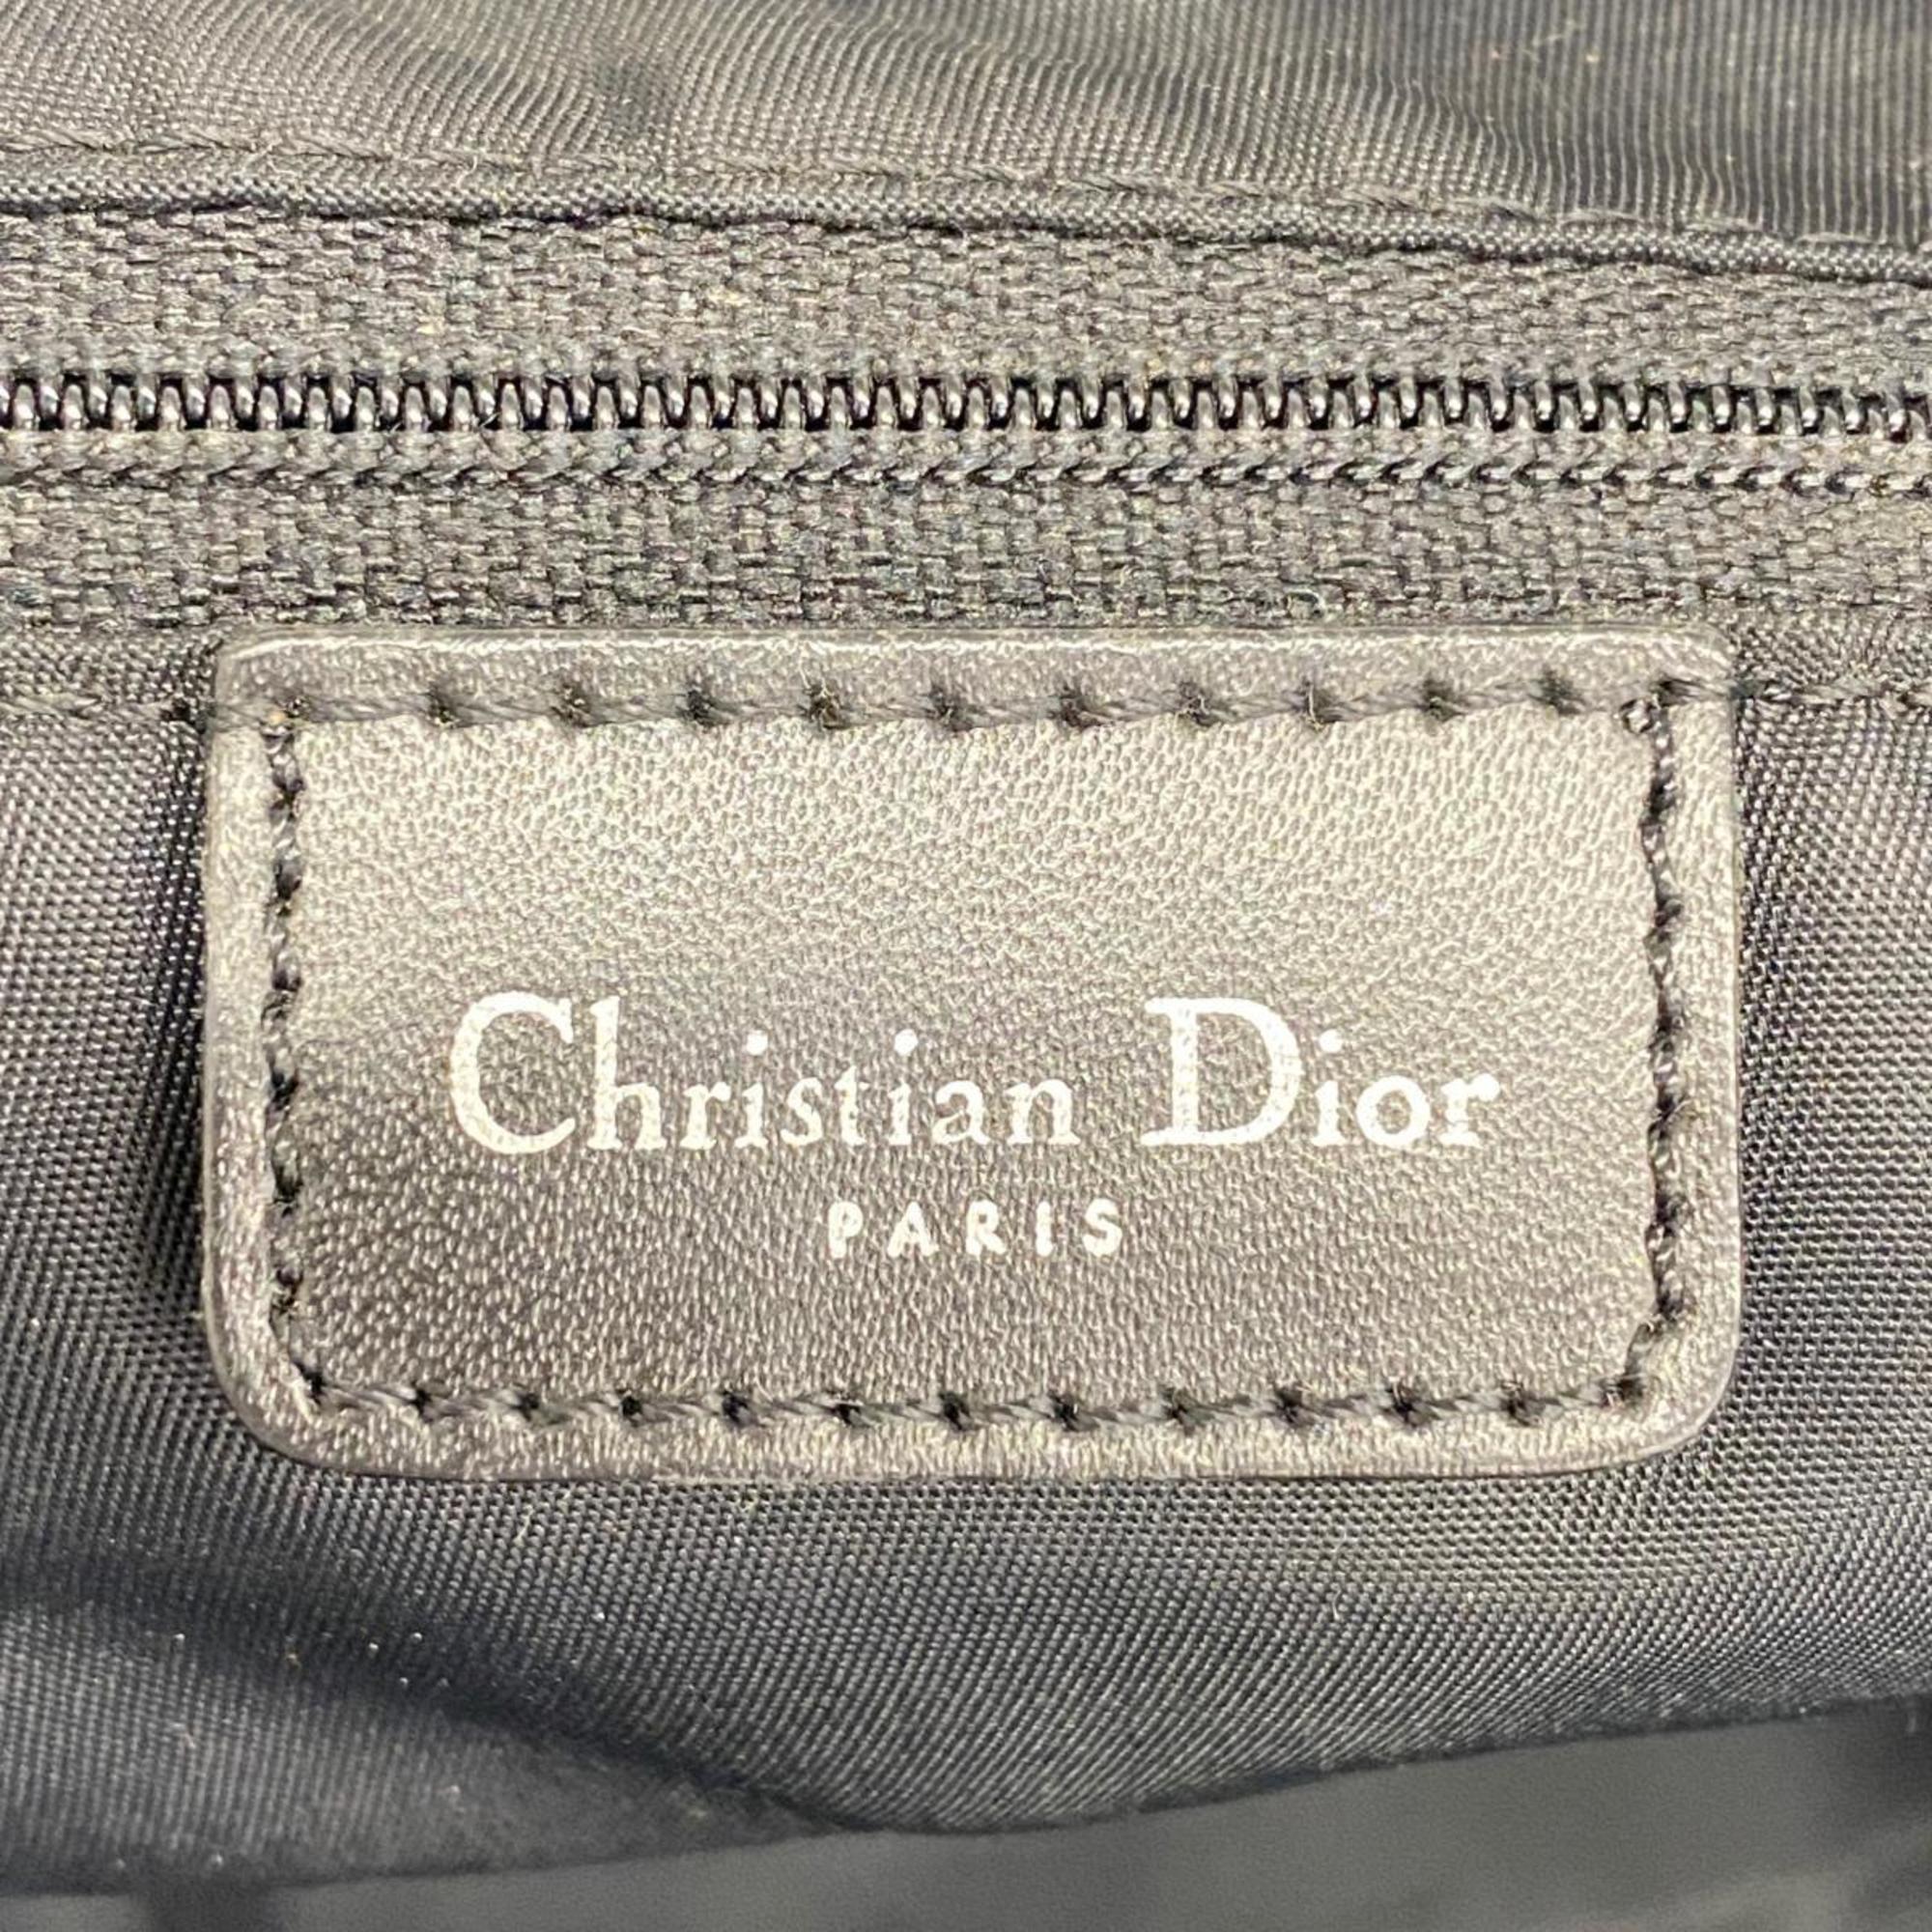 Christian Dior Shoulder Bag Trotter Canvas Black Women's